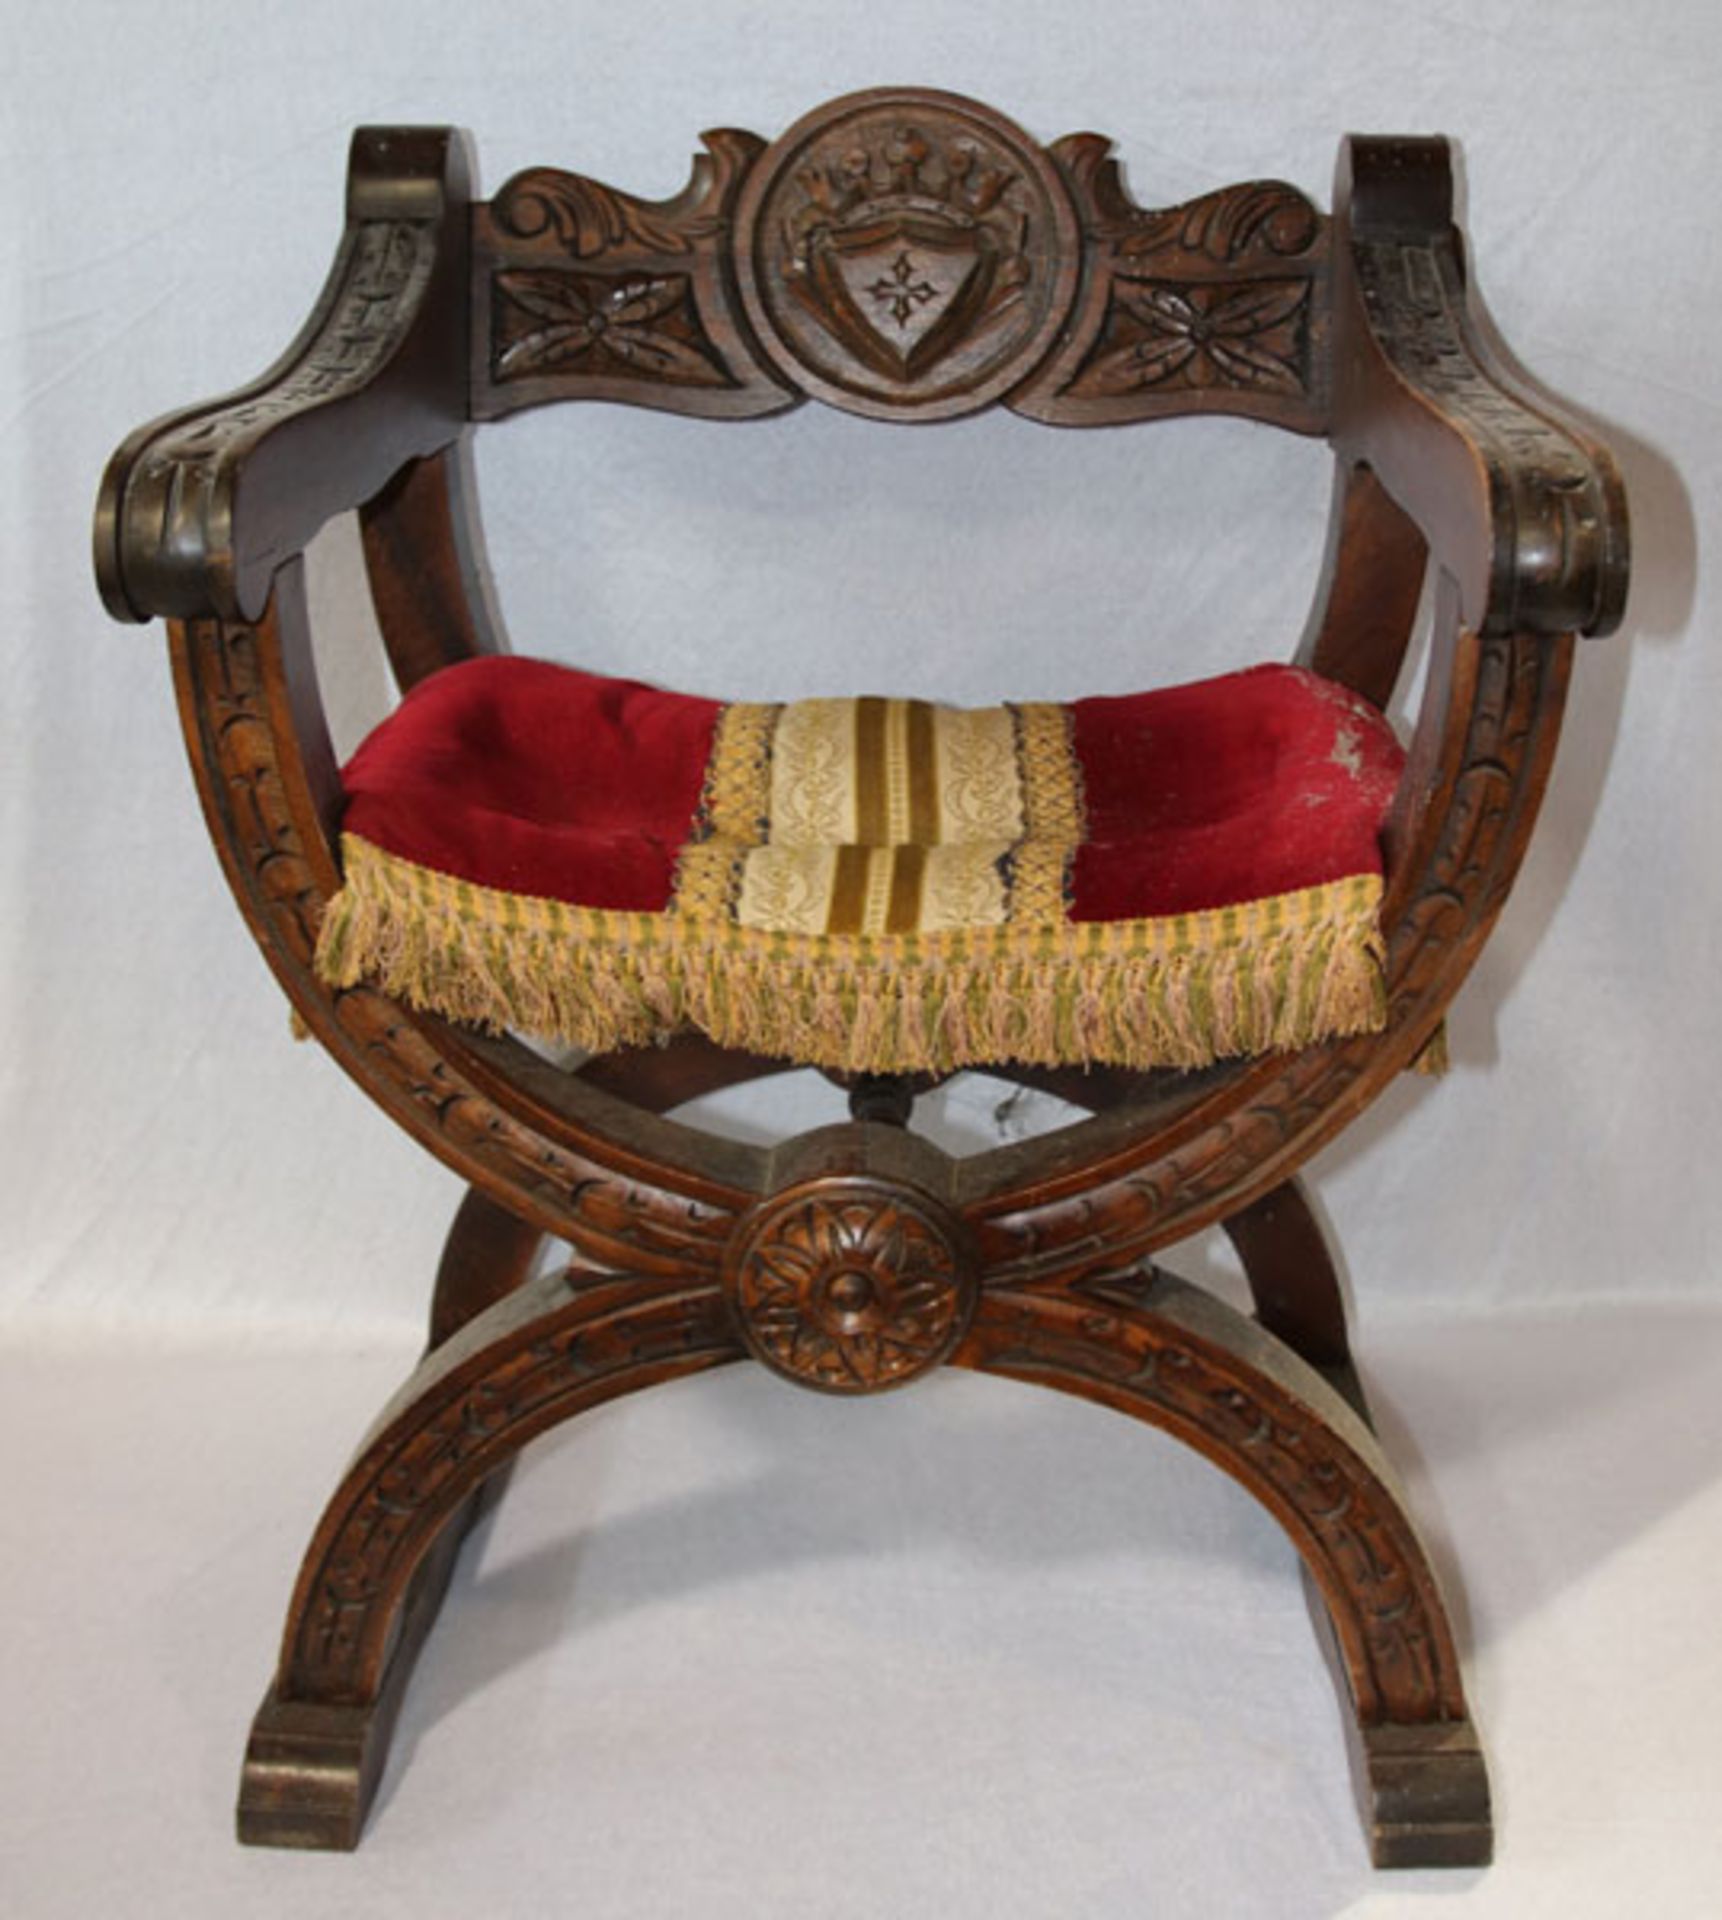 Spanischer Kreuzbeinstuhl, Sitz gepolstert und rot bezogen, teils beschnitzt, H 73 cm, B 62 cm, T 54